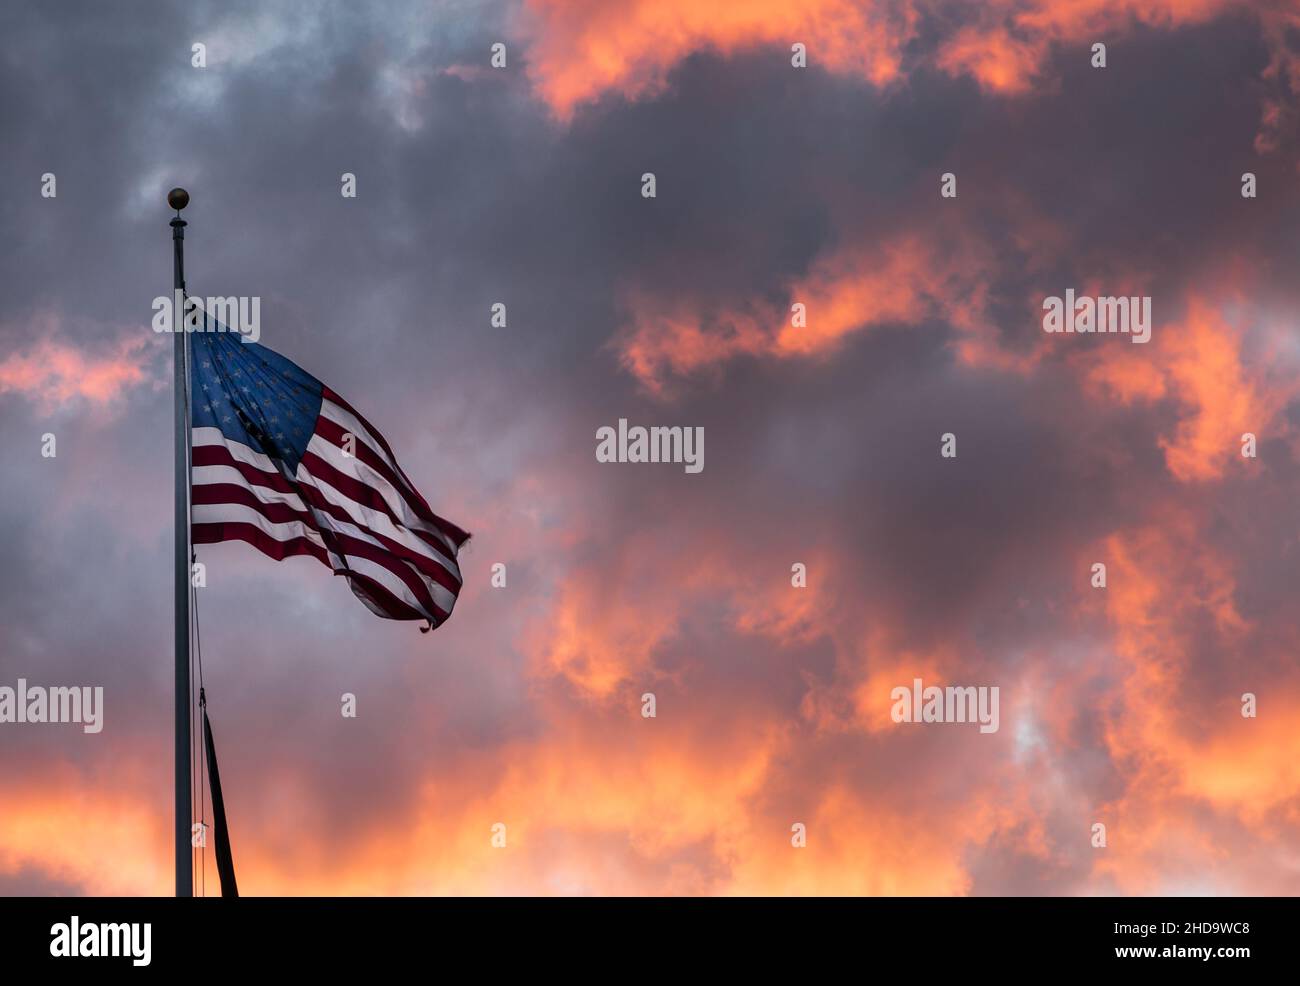 Die amerikanische Flagge gegen einen feuerroten Sonnenuntergangshimmel Stockfoto